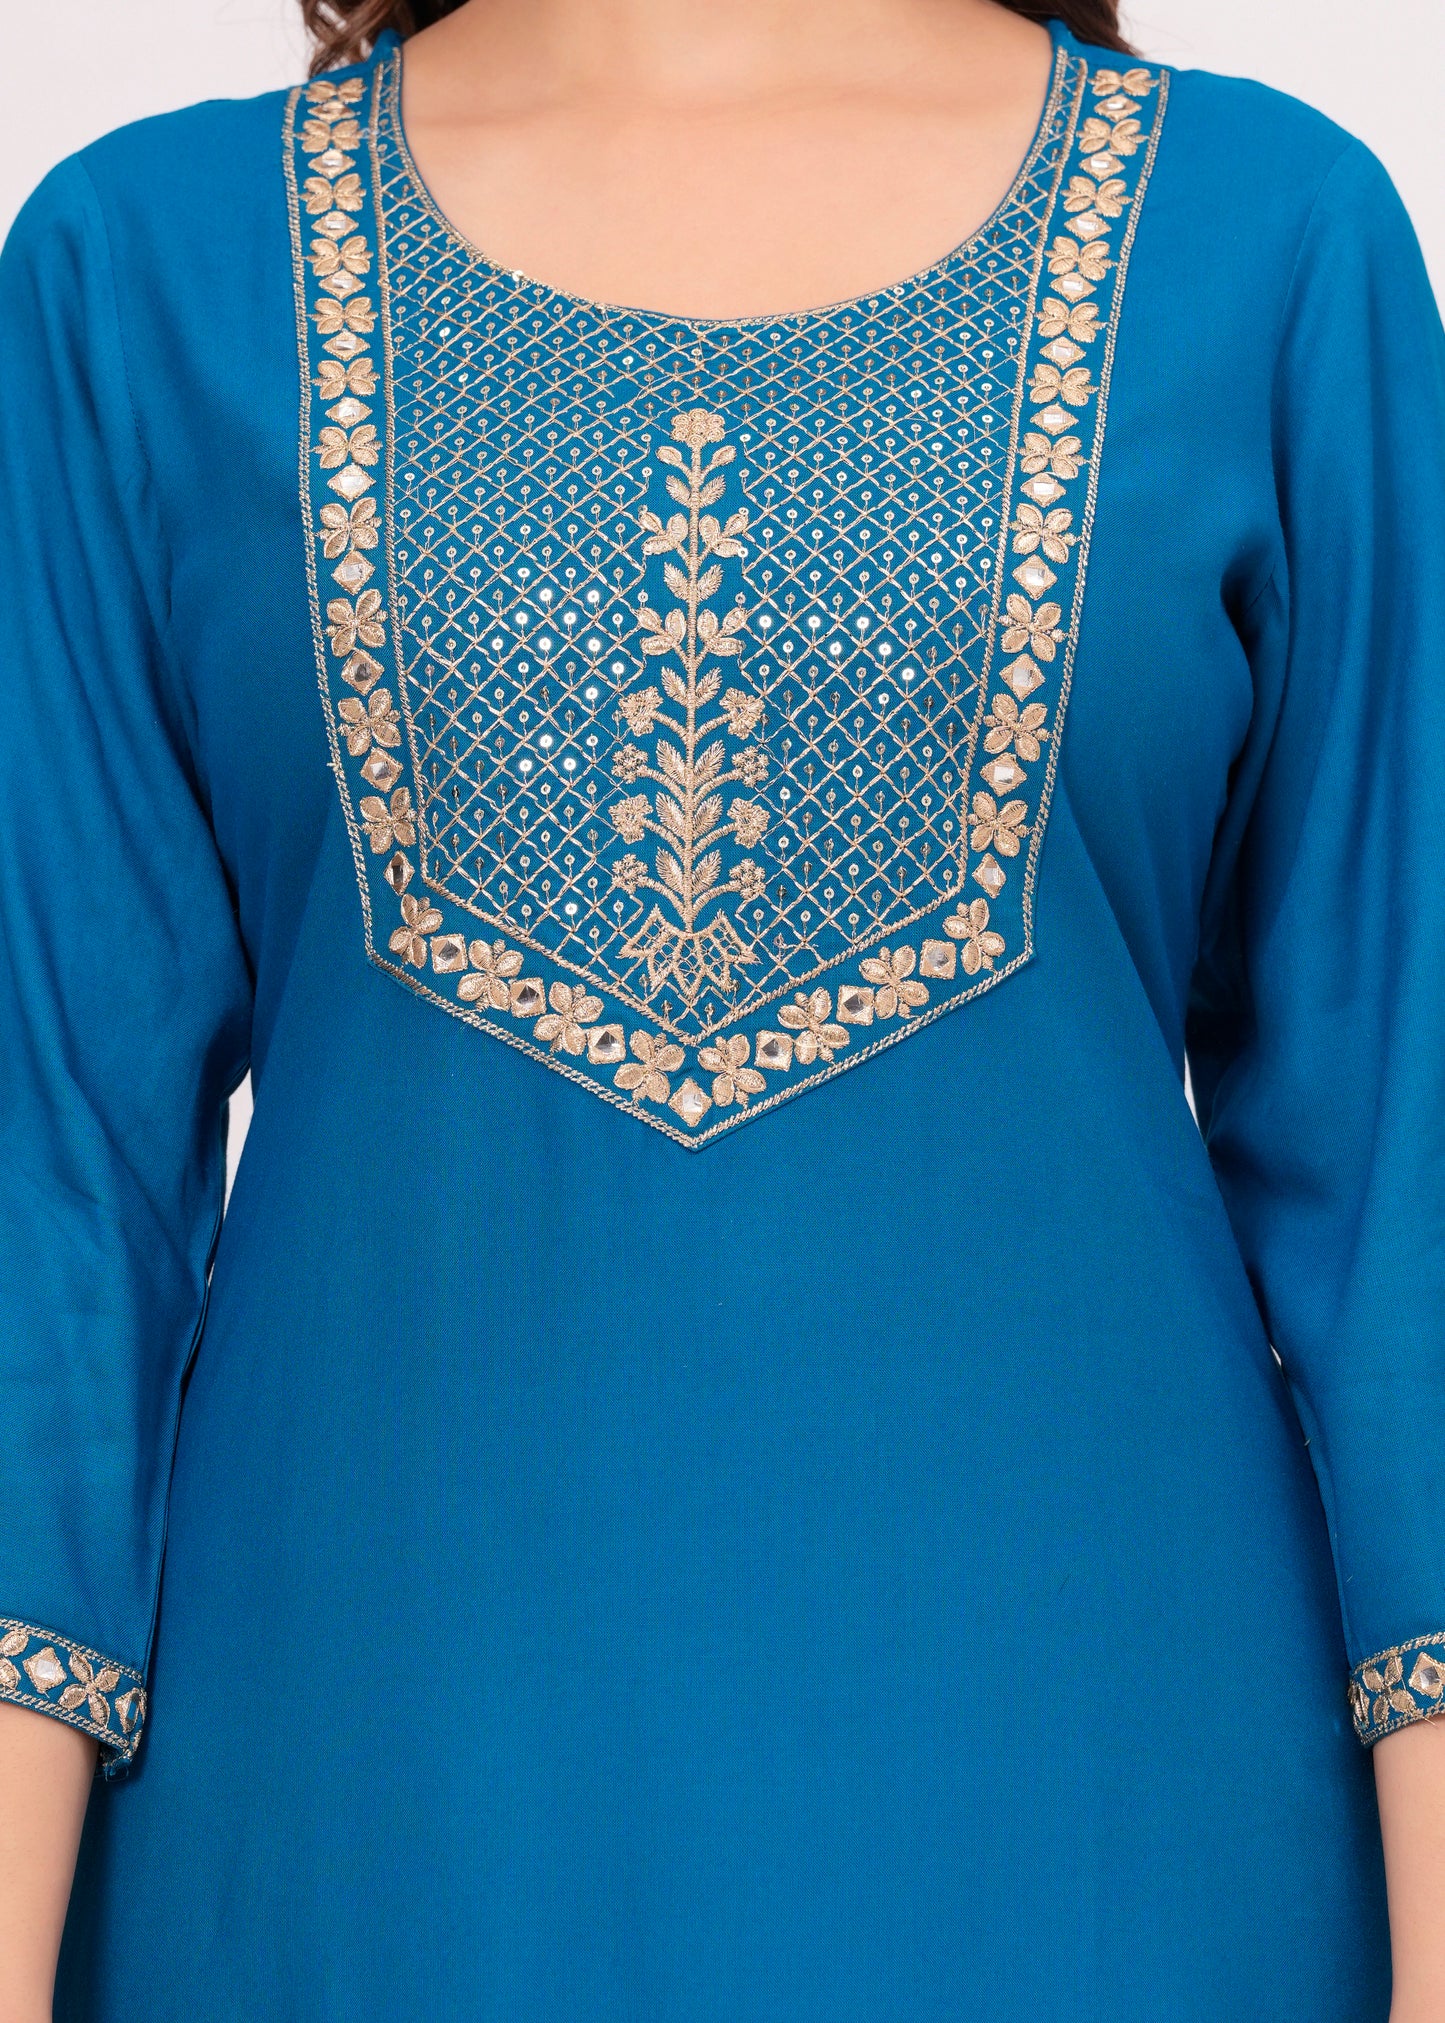 Women Embroidered Rayon Royal Blue Kurtis